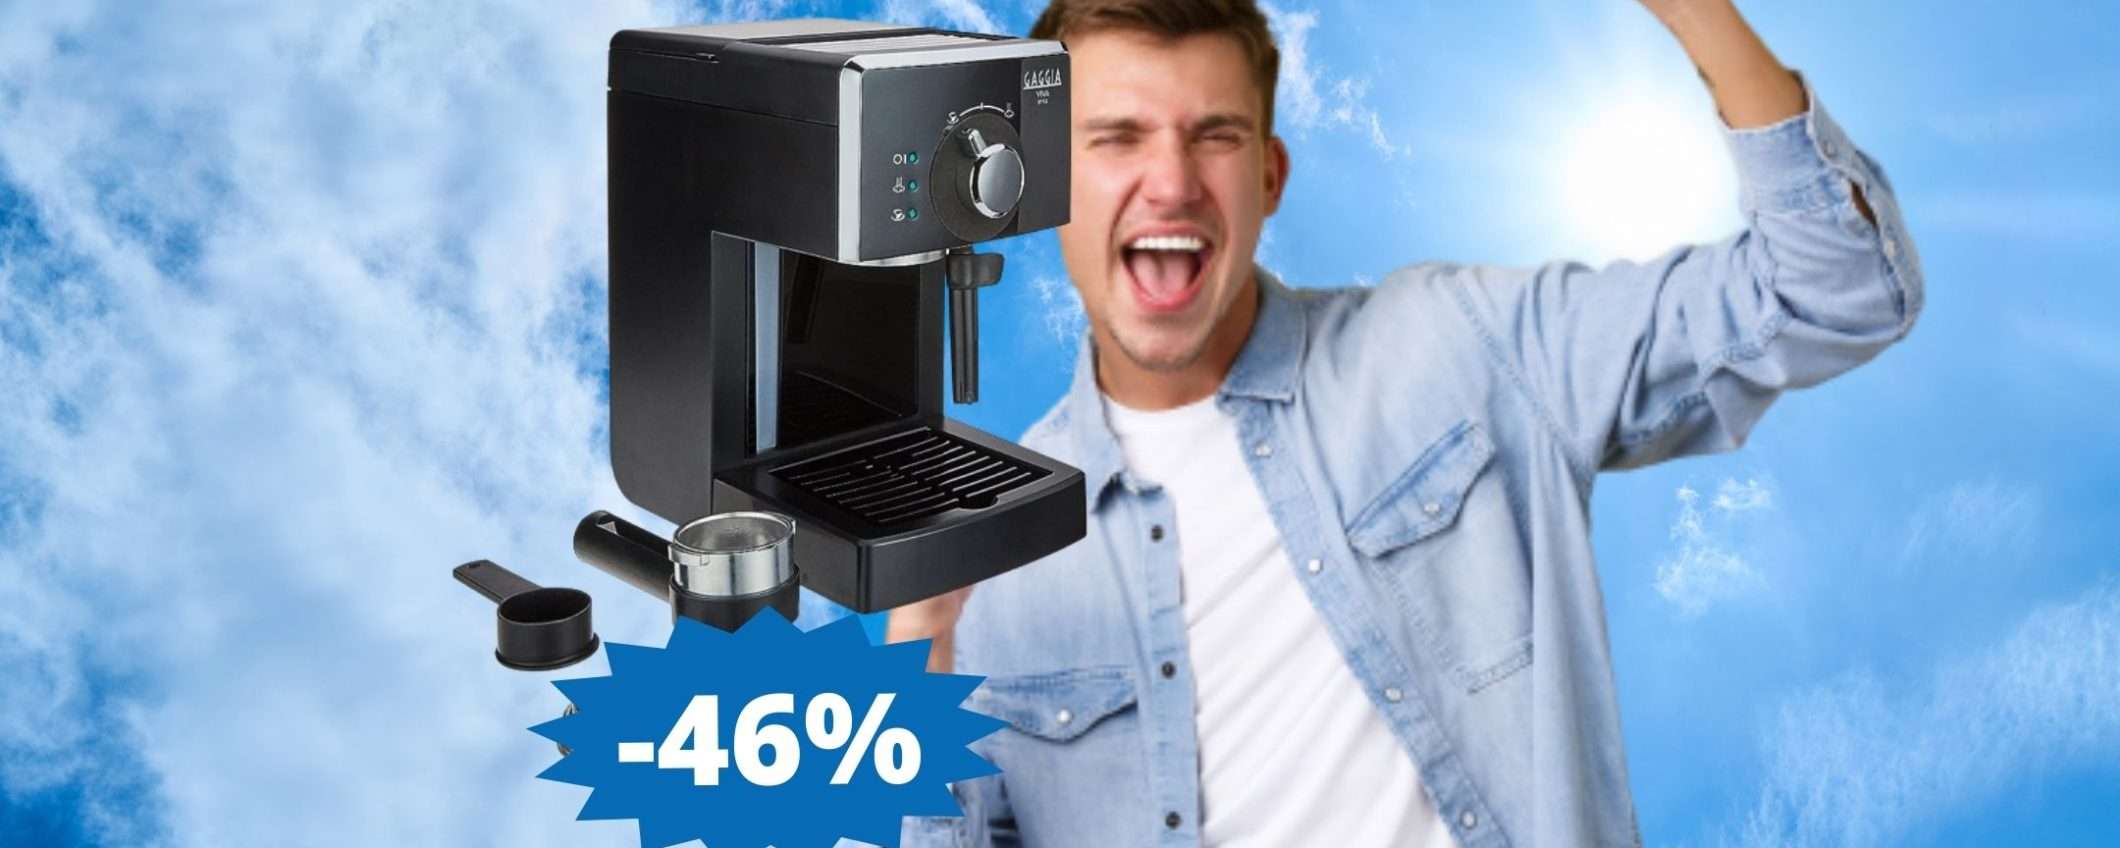 Gaggia Viva Style: il gusto autentico del caffè (-46%)